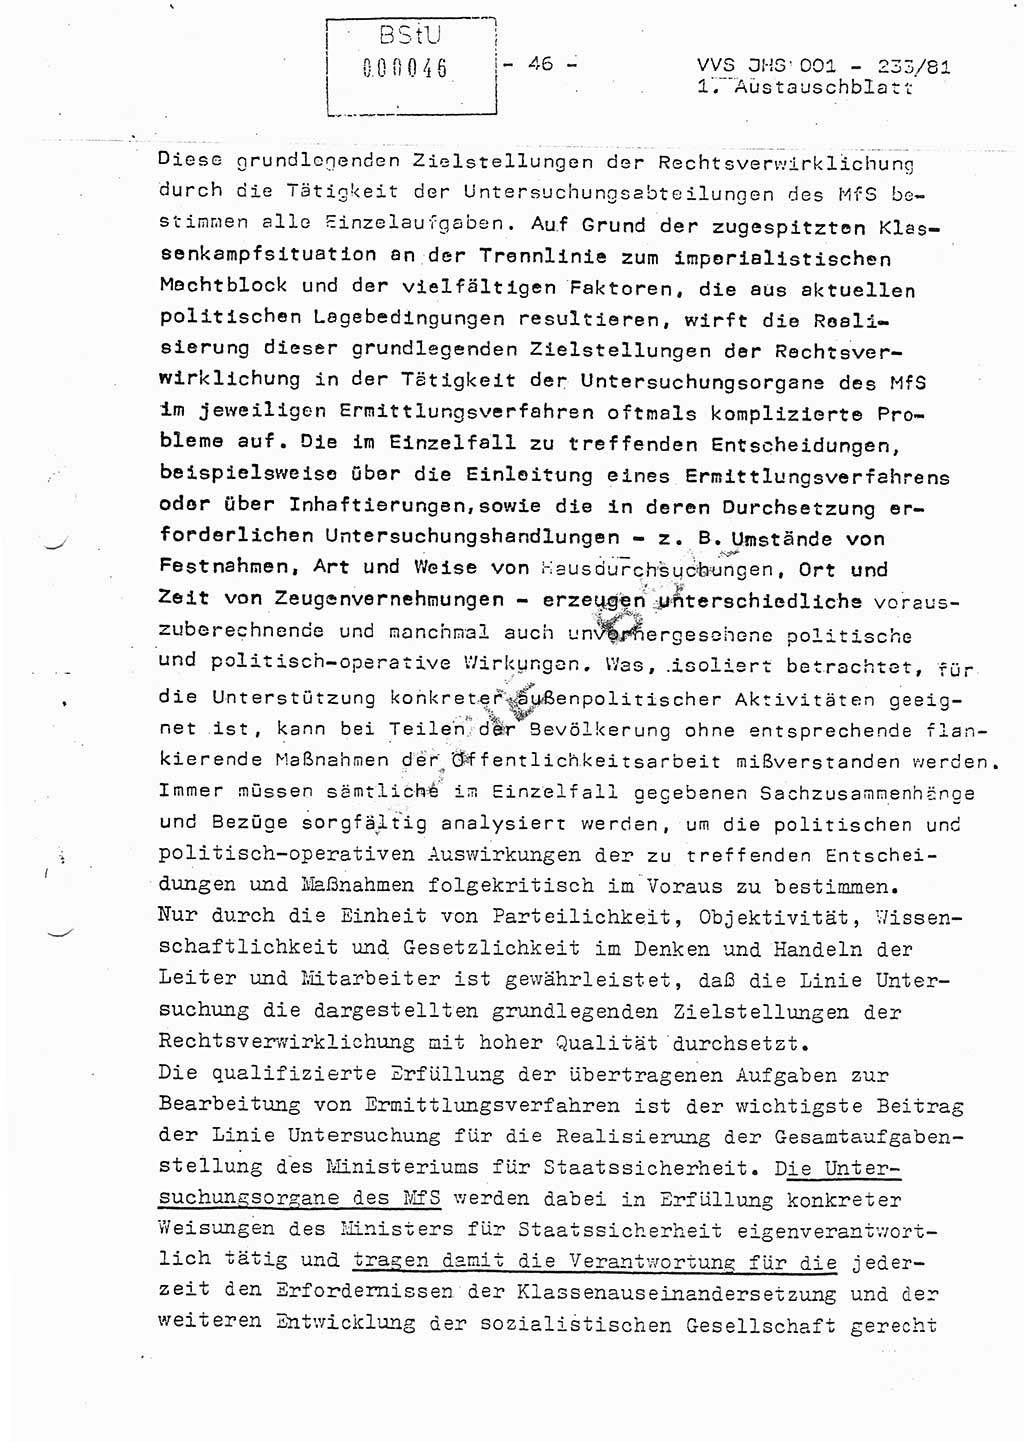 Dissertation Oberstleutnant Horst Zank (JHS), Oberstleutnant Dr. Karl-Heinz Knoblauch (JHS), Oberstleutnant Gustav-Adolf Kowalewski (HA Ⅸ), Oberstleutnant Wolfgang Plötner (HA Ⅸ), Ministerium für Staatssicherheit (MfS) [Deutsche Demokratische Republik (DDR)], Juristische Hochschule (JHS), Vertrauliche Verschlußsache (VVS) o001-233/81, Potsdam 1981, Blatt 46 (Diss. MfS DDR JHS VVS o001-233/81 1981, Bl. 46)